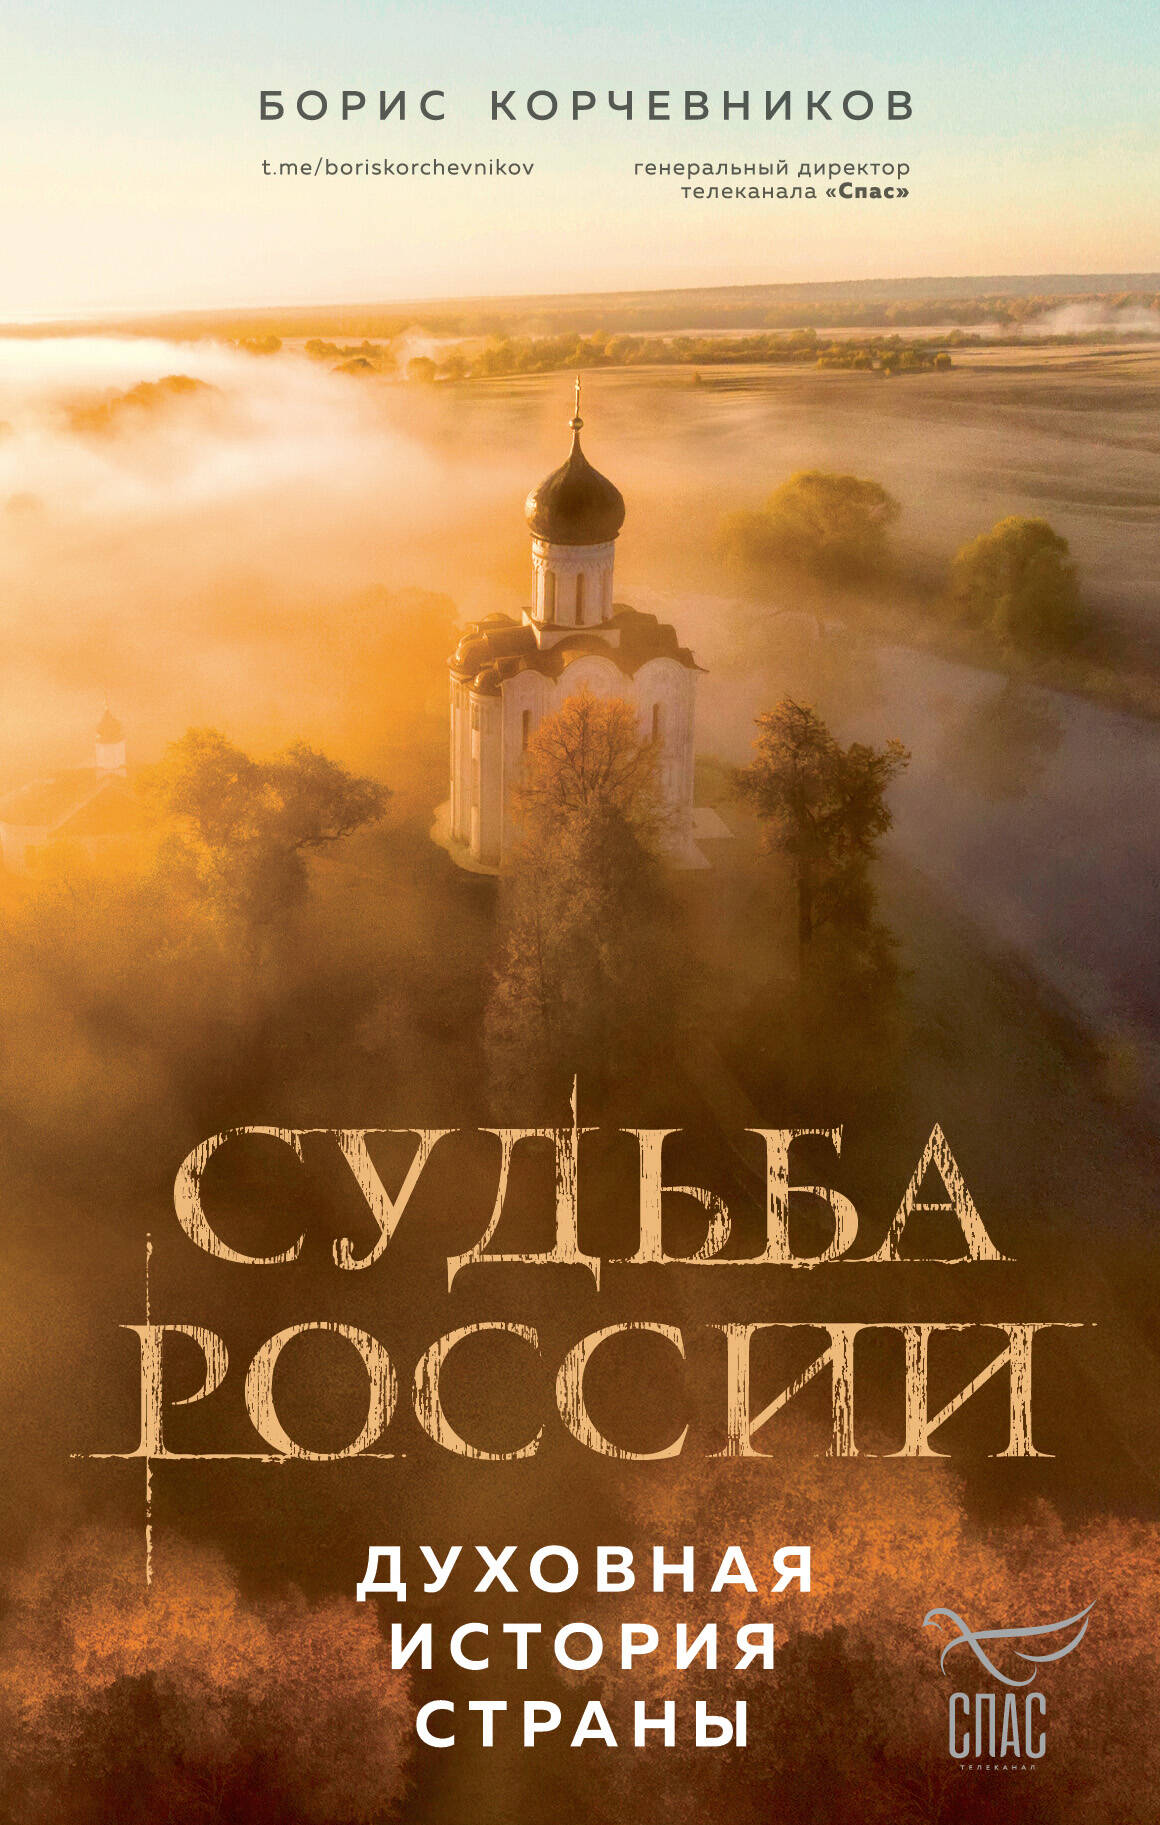  книга Судьба России. Духовная история страны